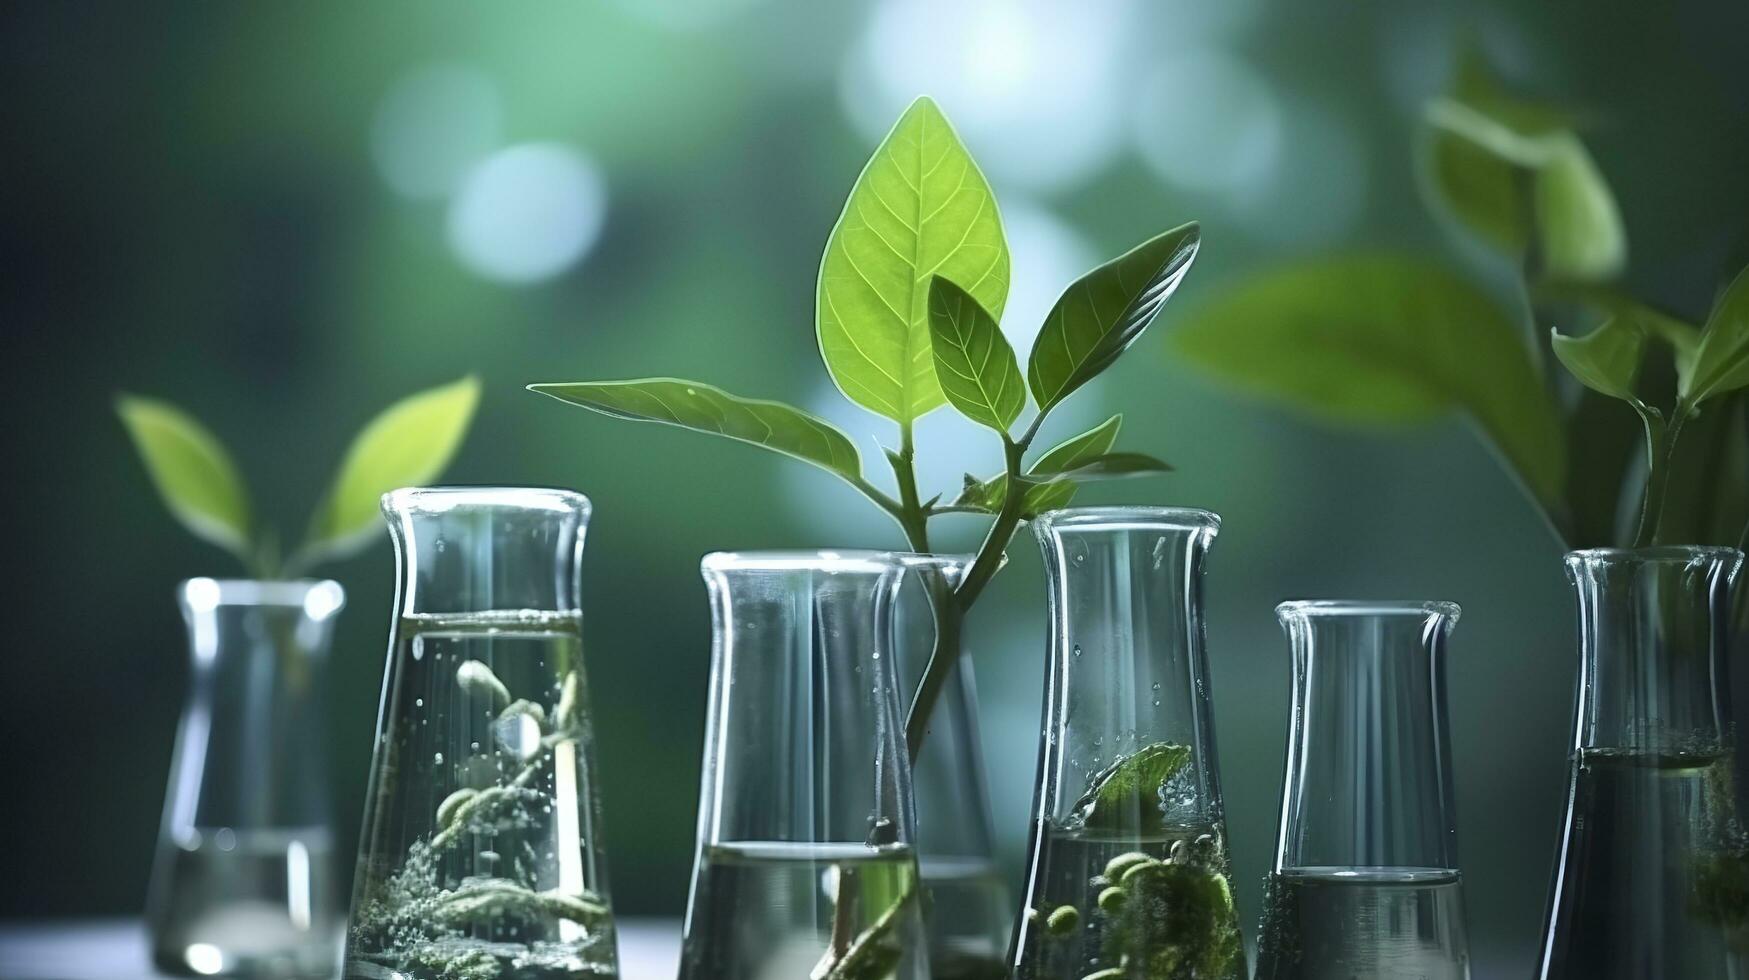 biotecnología concepto con verde planta hojas, laboratorio cristalería, y conductible investigación, ilustrando el poderoso combinación de naturaleza y Ciencias en médico avances ai generativo foto